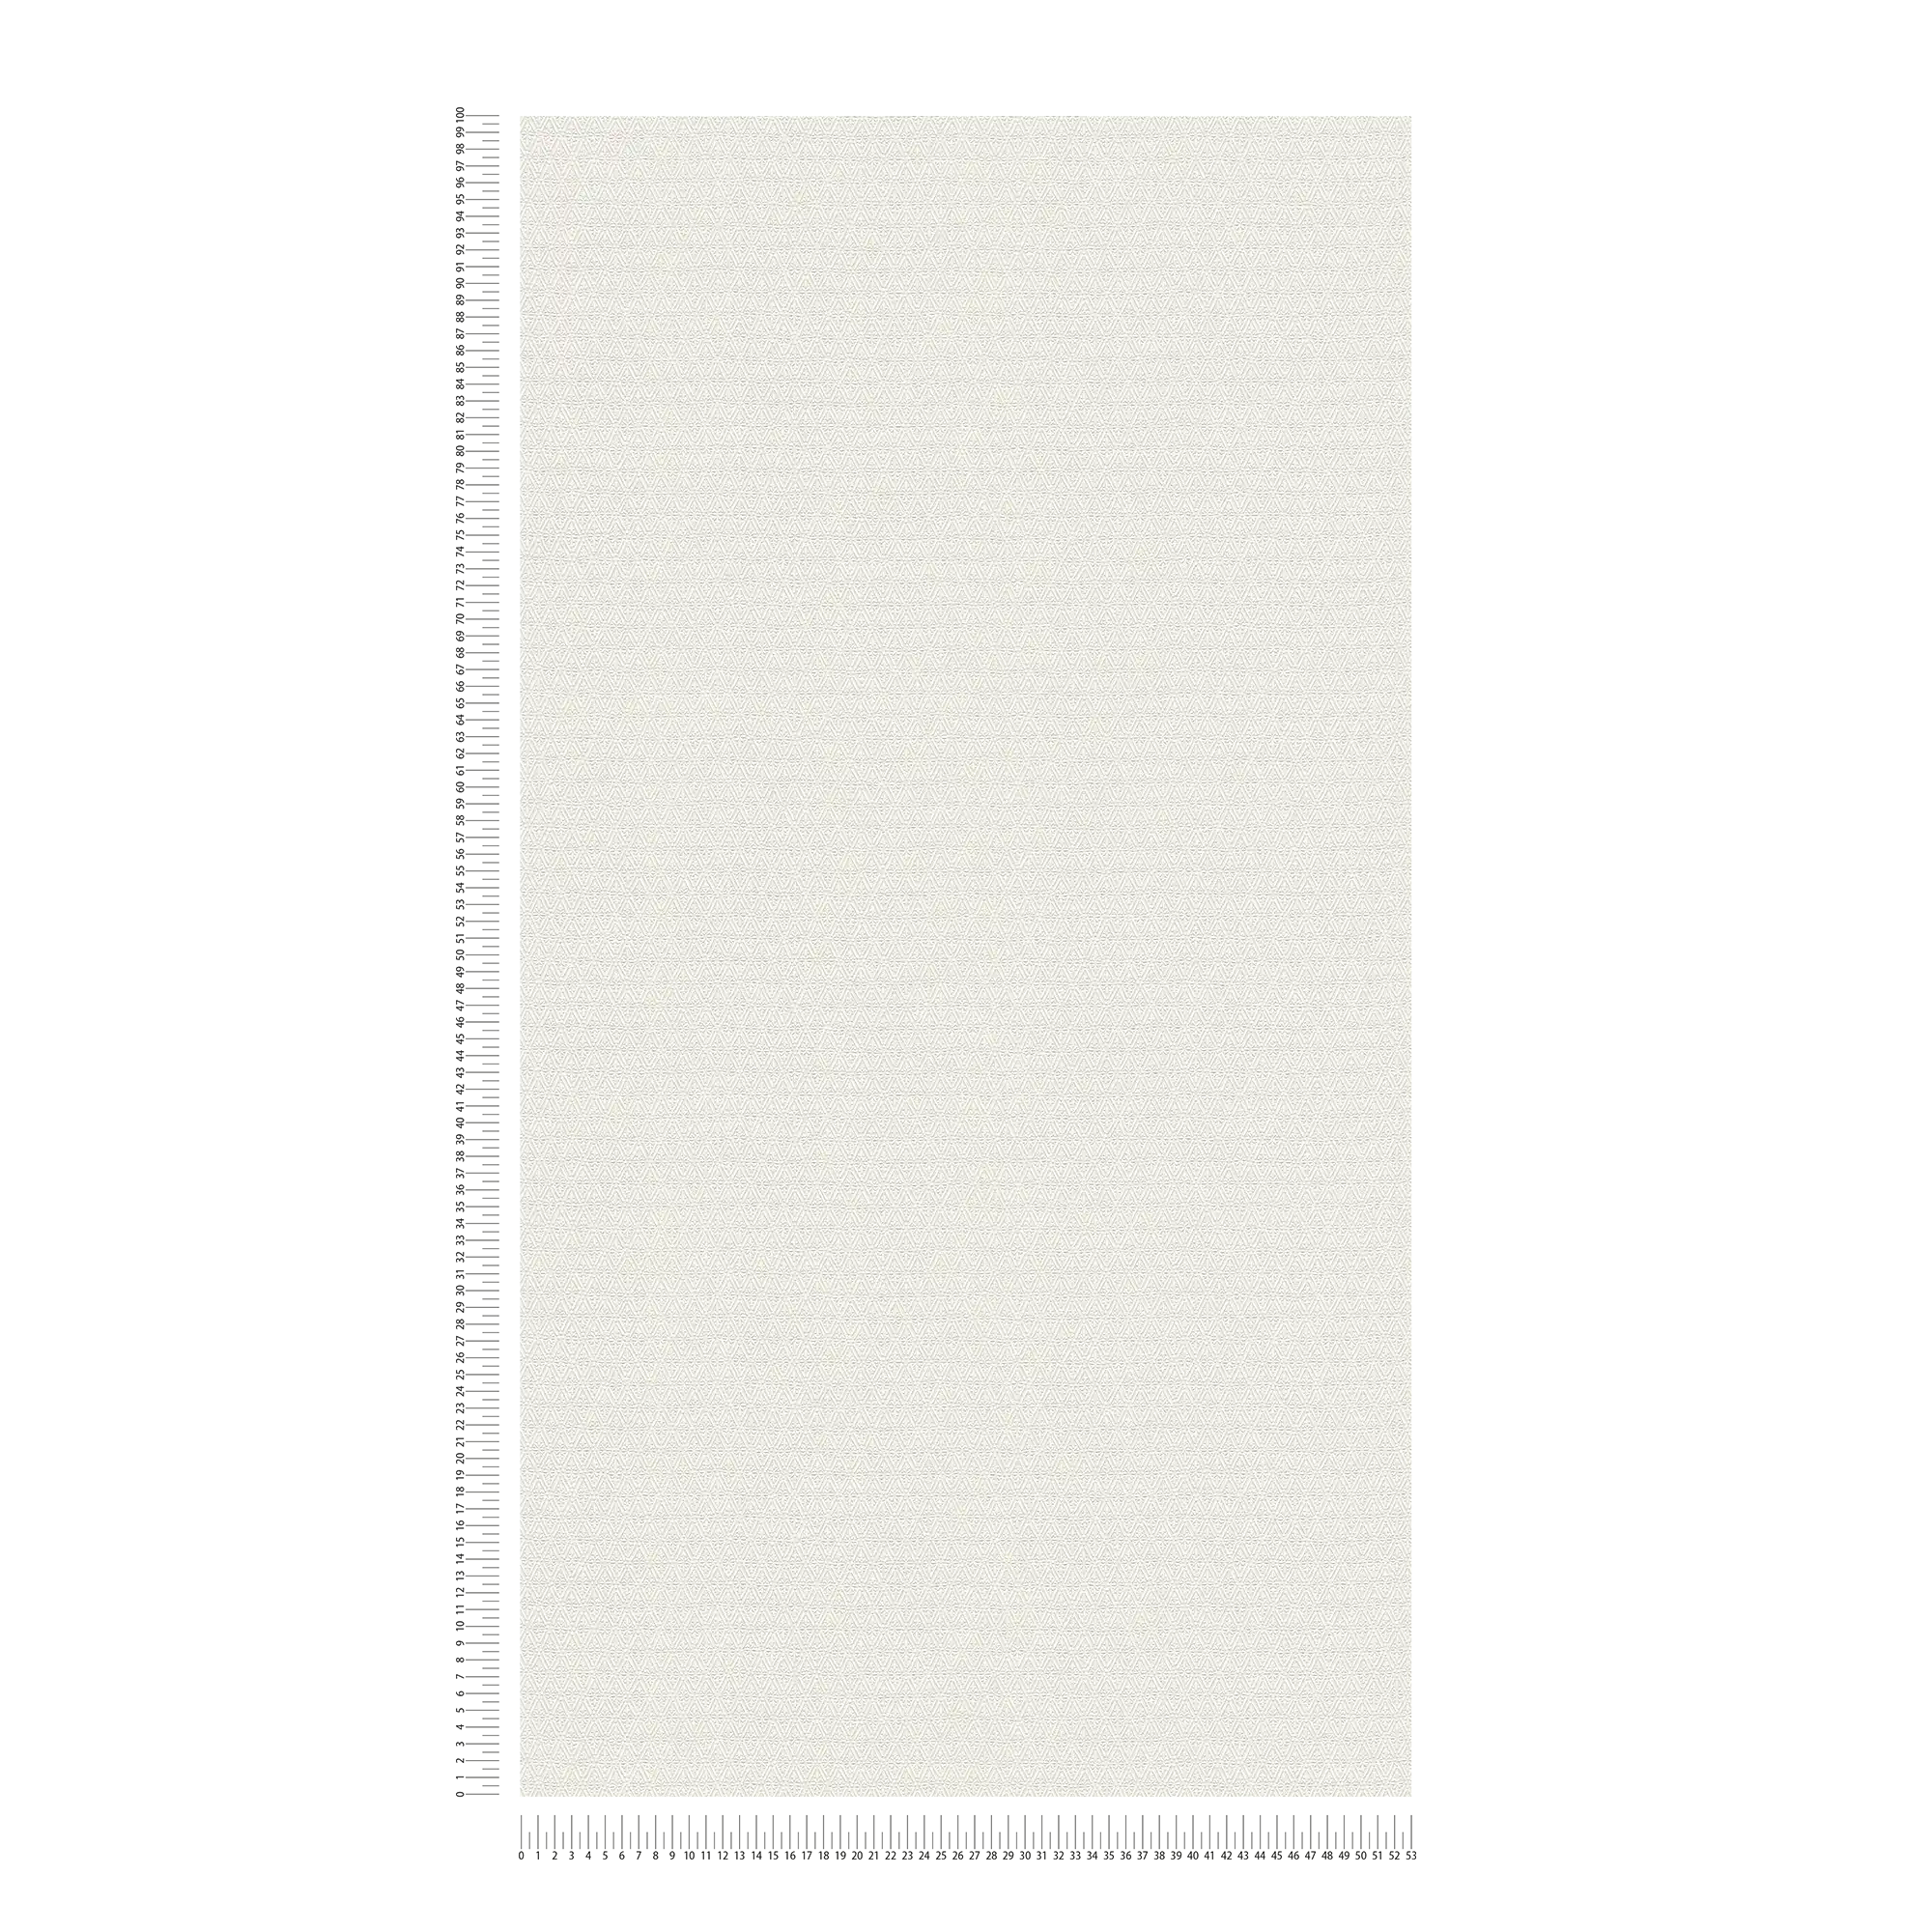             Papier peint uni avec motif structuré en losange - crème, blanc
        